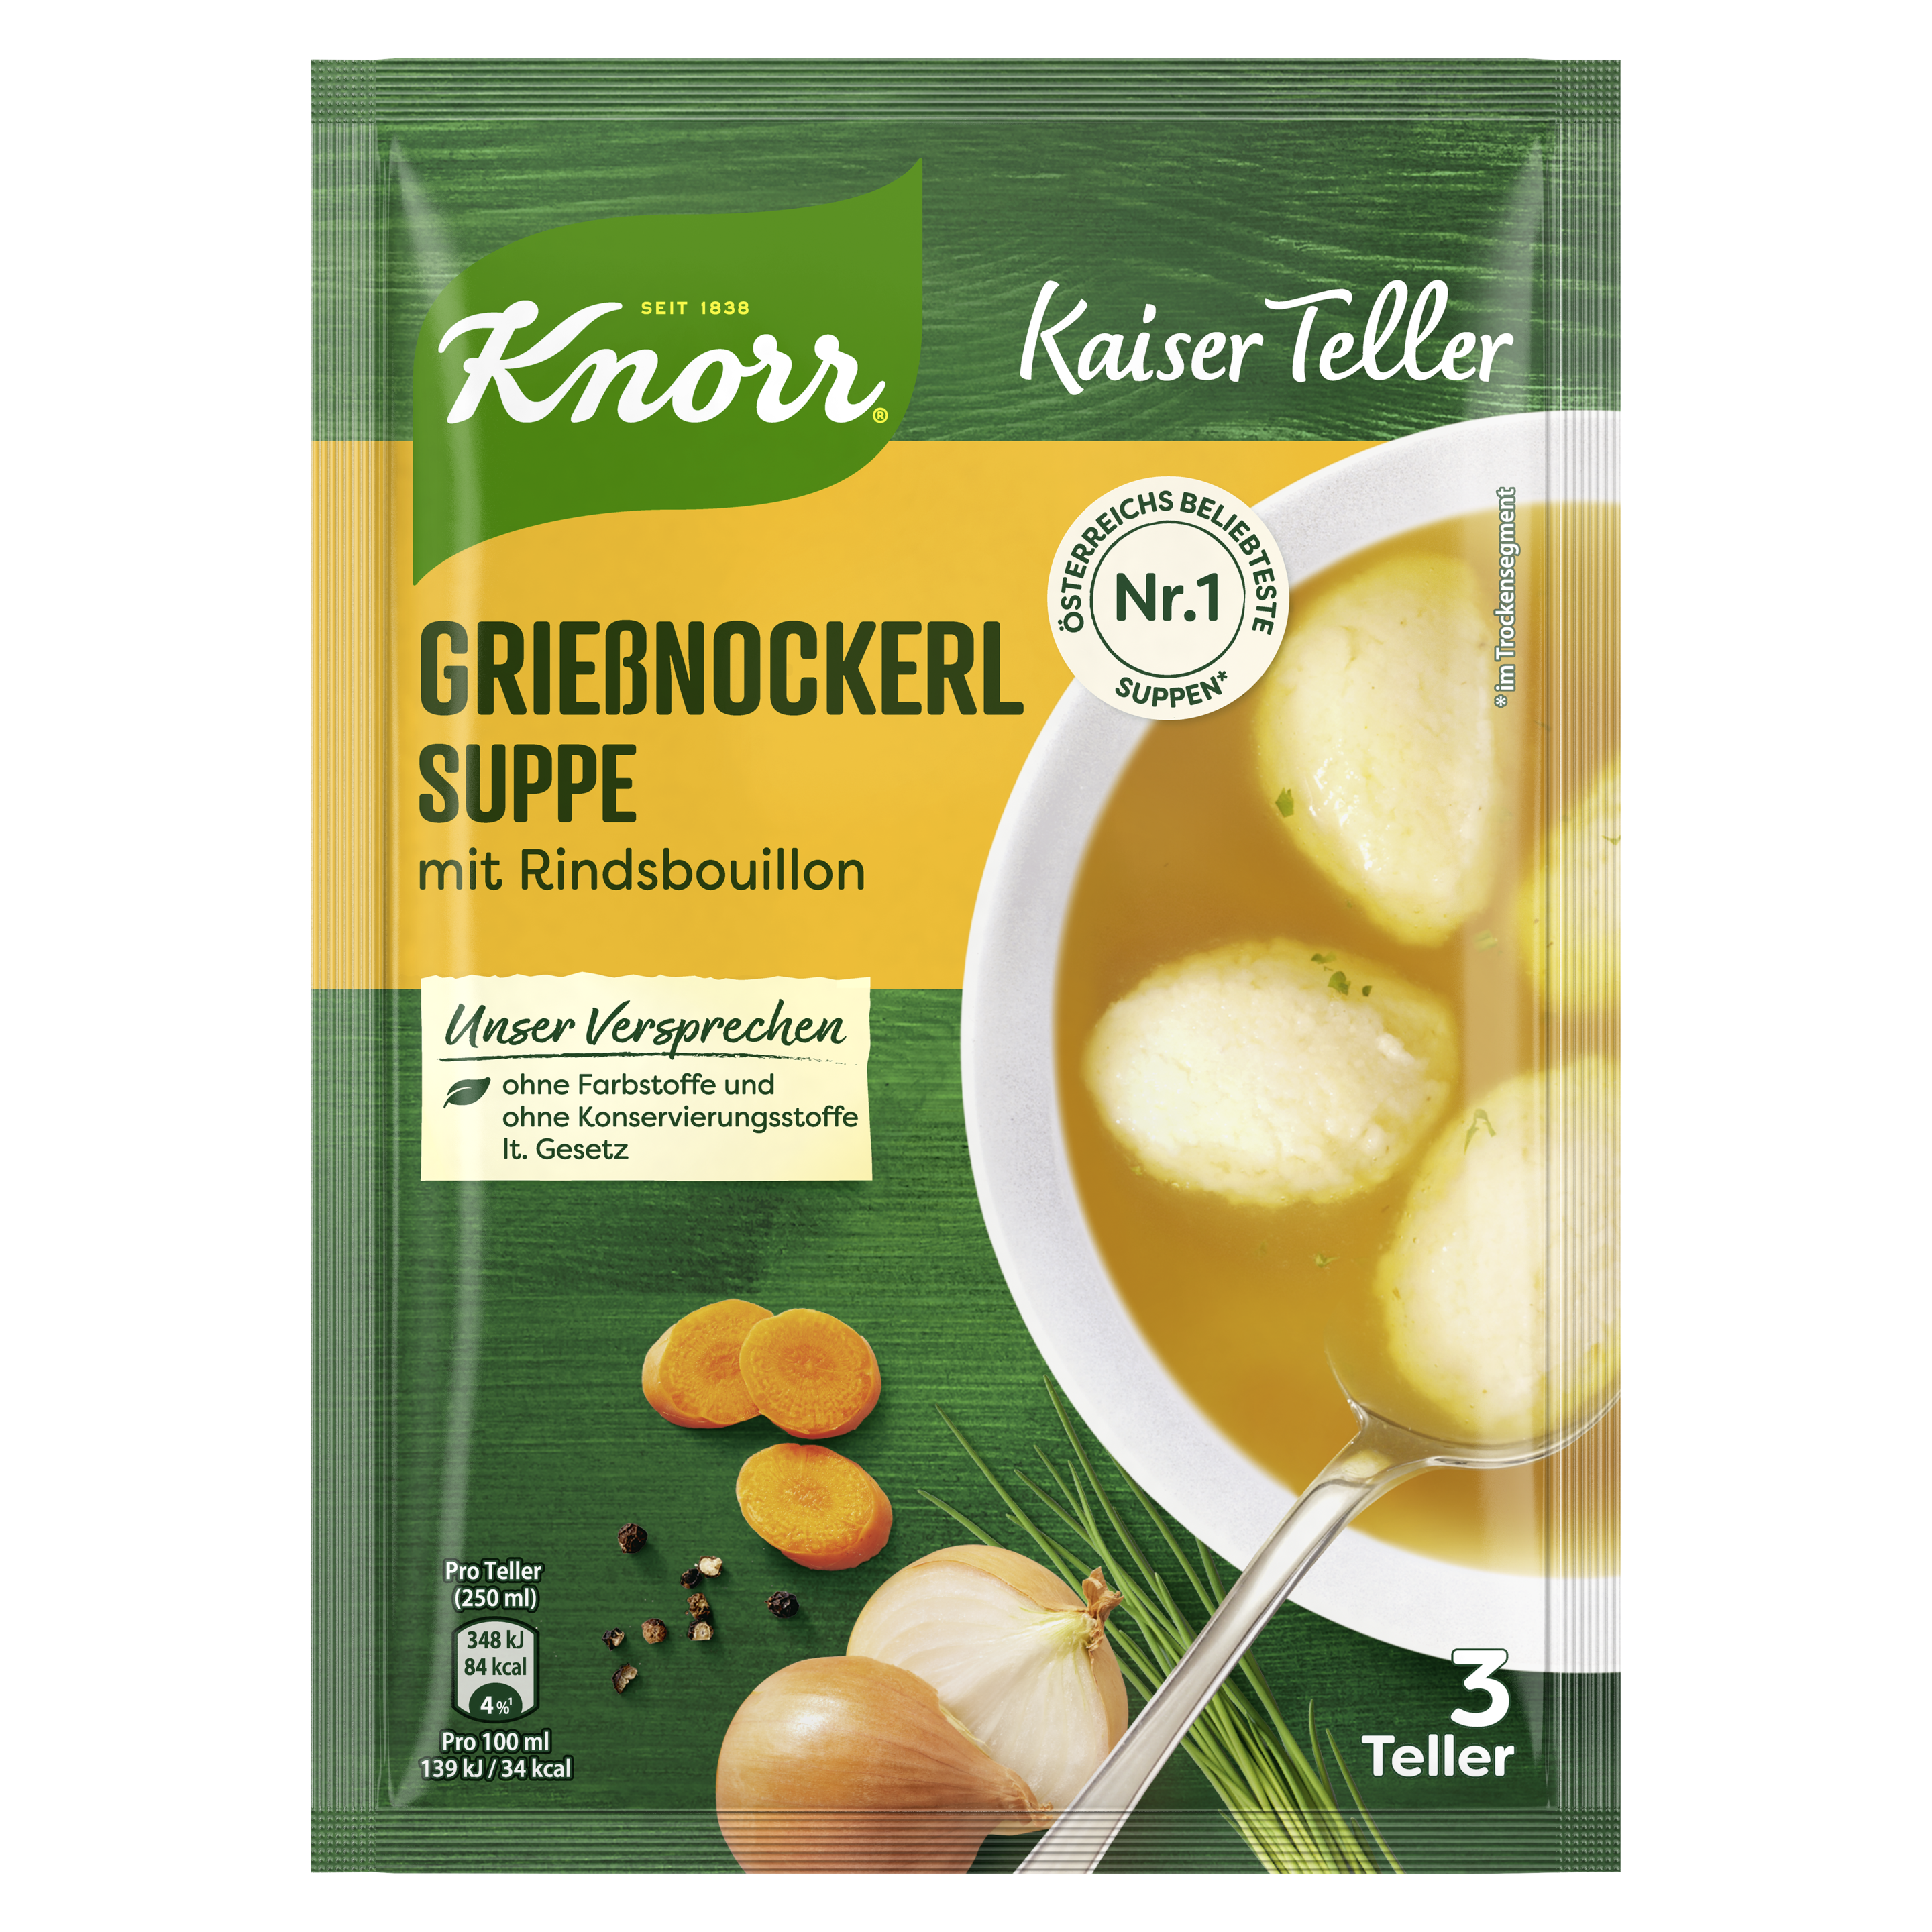 Knorr Kaiser Teller Grießnockerl Suppe 3 Teller